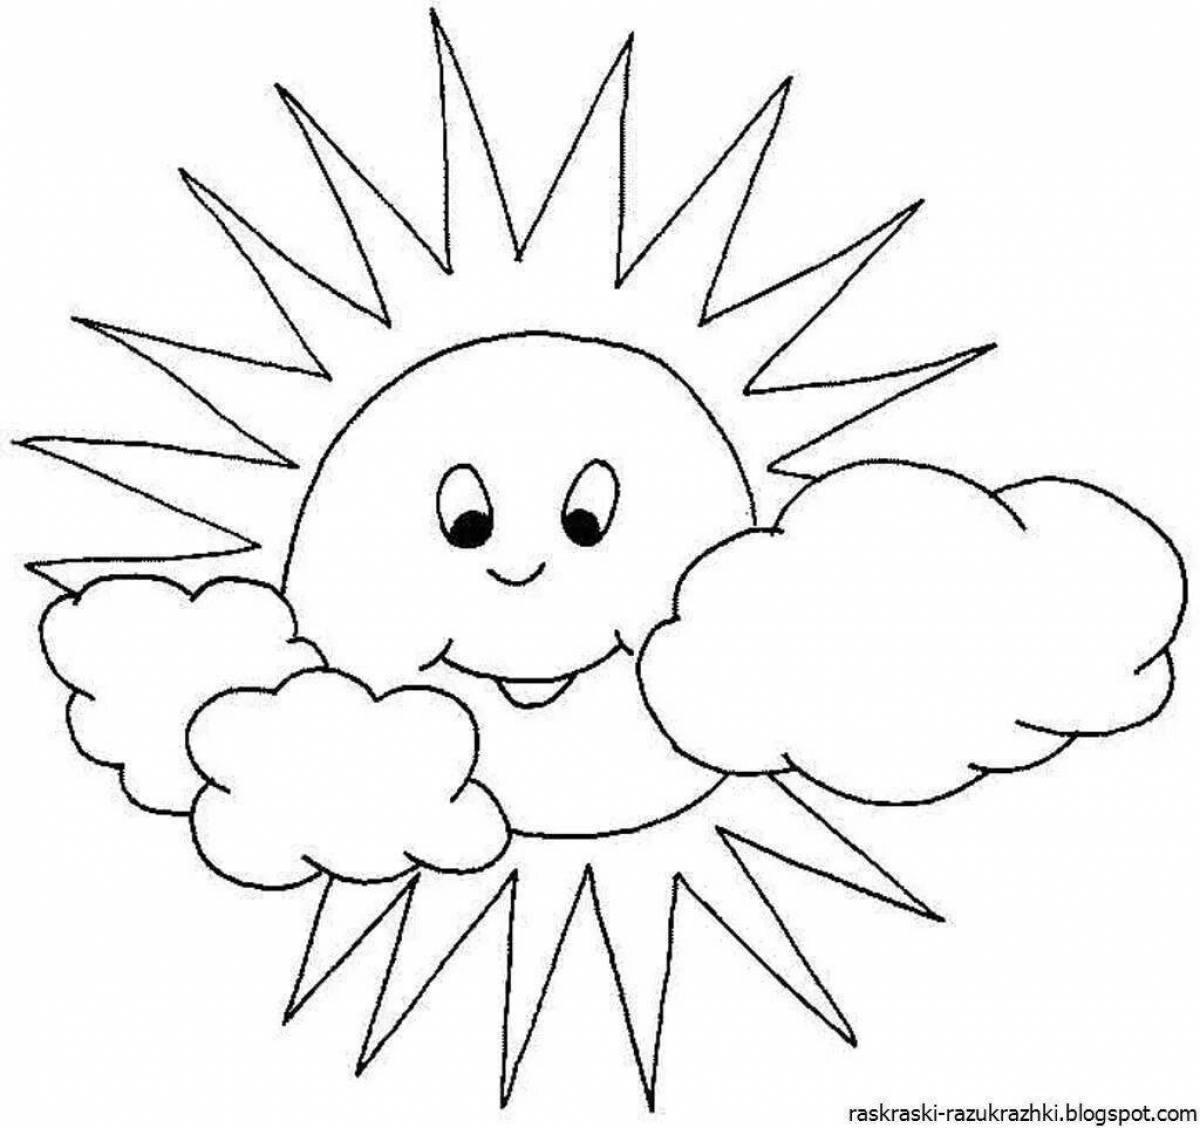 Праздничная раскраска солнце для детей 3-4 лет